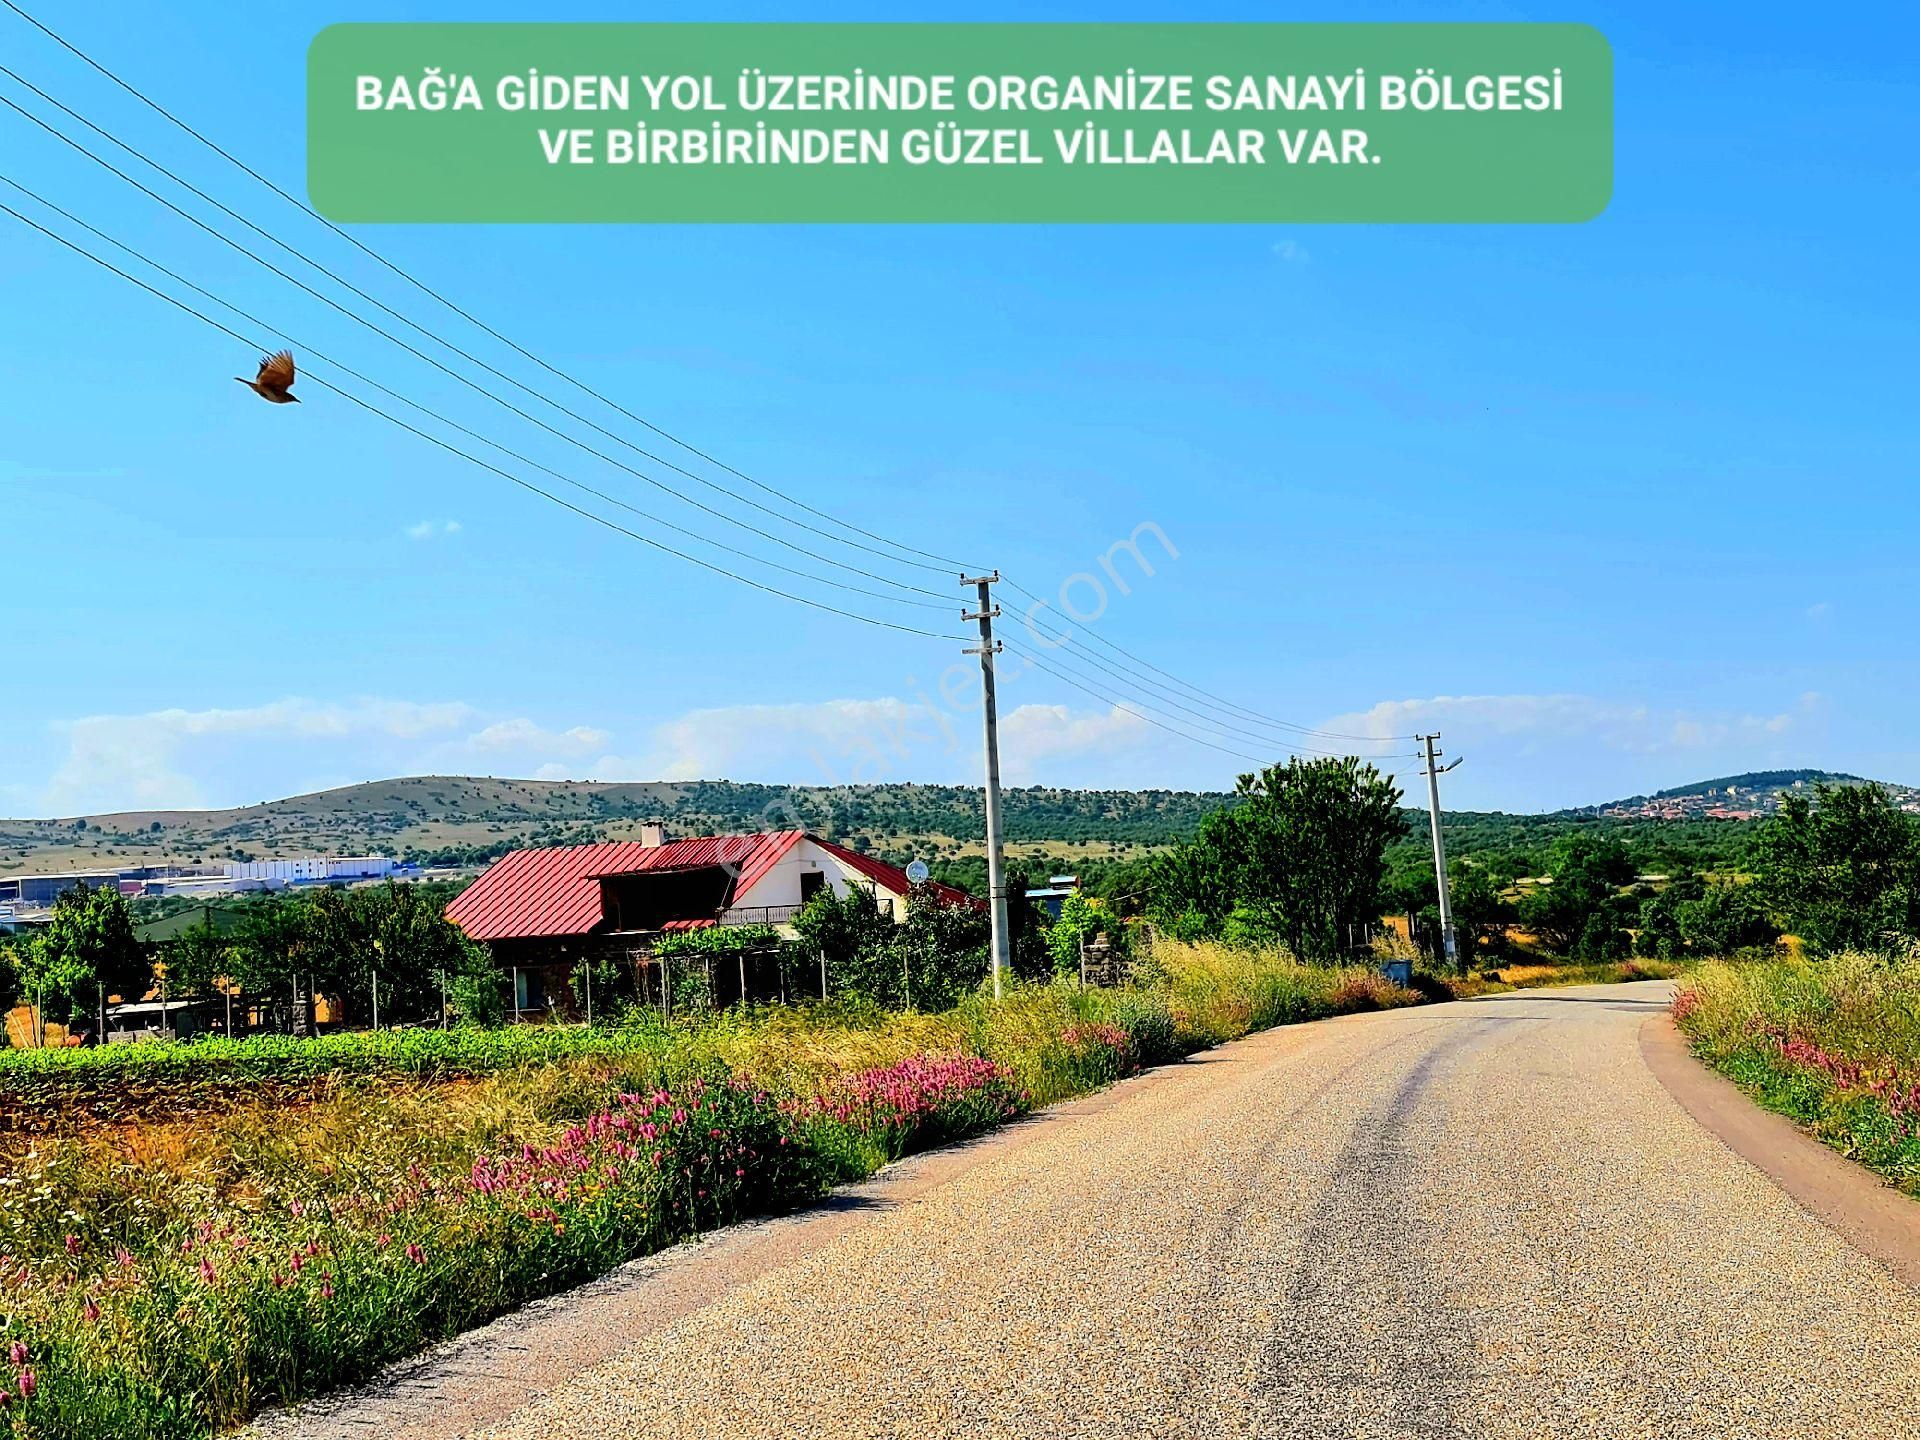 Karahallı Külköy Köyü Satılık Bağ & Bahçe Karahallı Yeni Toki Konutlarına 5 Km, Köye 700 Metre, Yolun Yanı 6.650 m2 Düz Bağ, Detay Açıklamada.